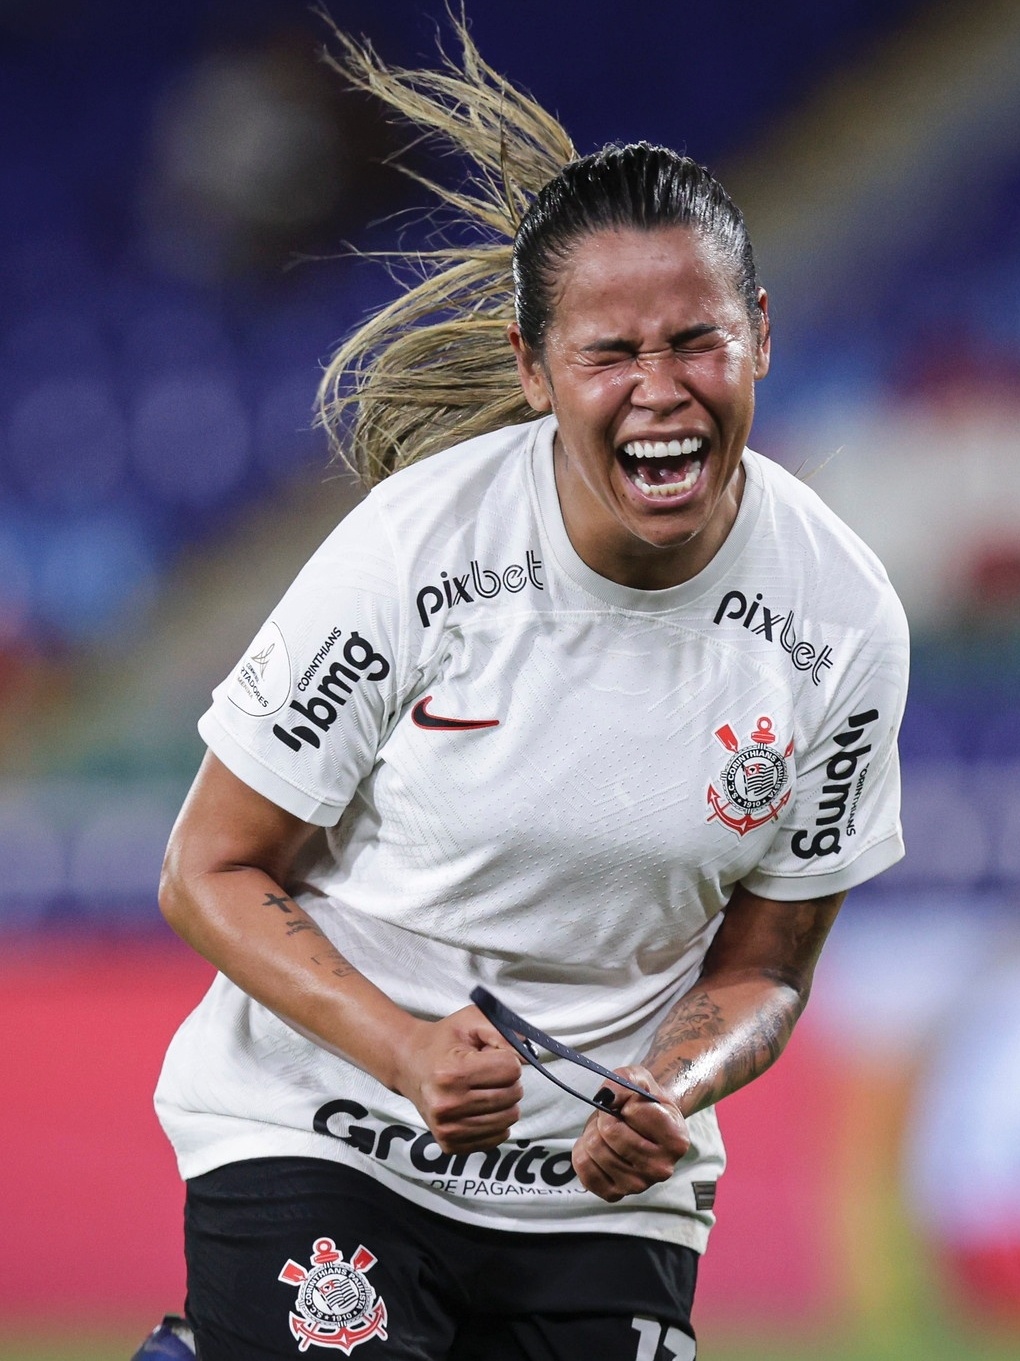 Palmeiras x Corinthians: onde assistir ao vivo, ingressos, premiação e mais  sobre a final da Libertadores Feminina